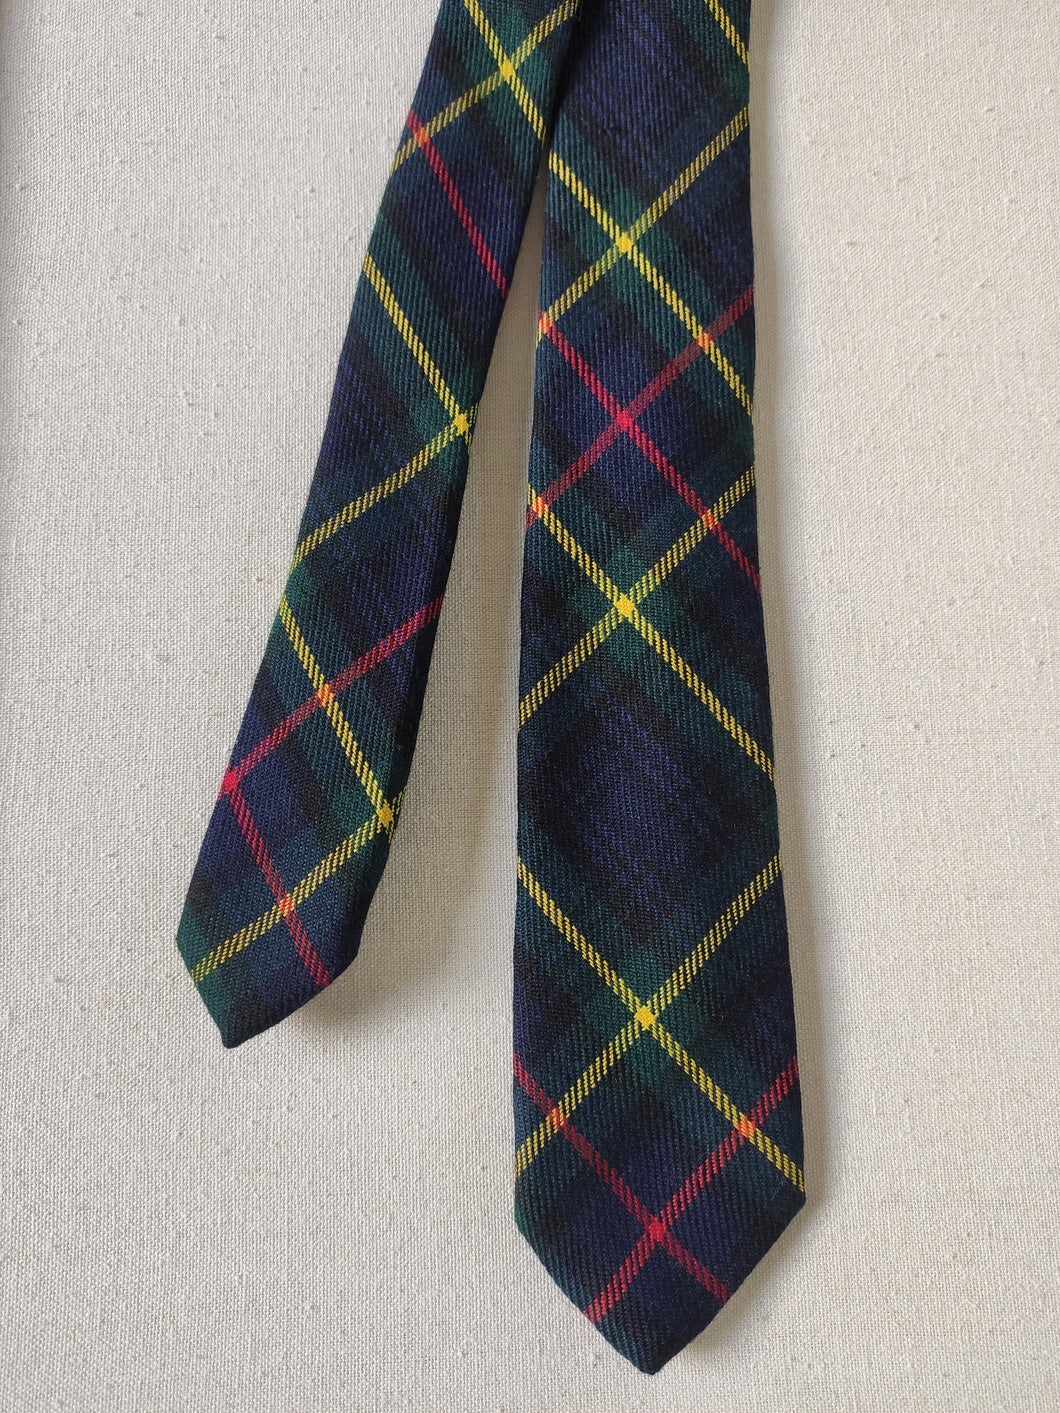 Mc Sheldon cravate tartan vintage en laine d'agneau Made in Scotland